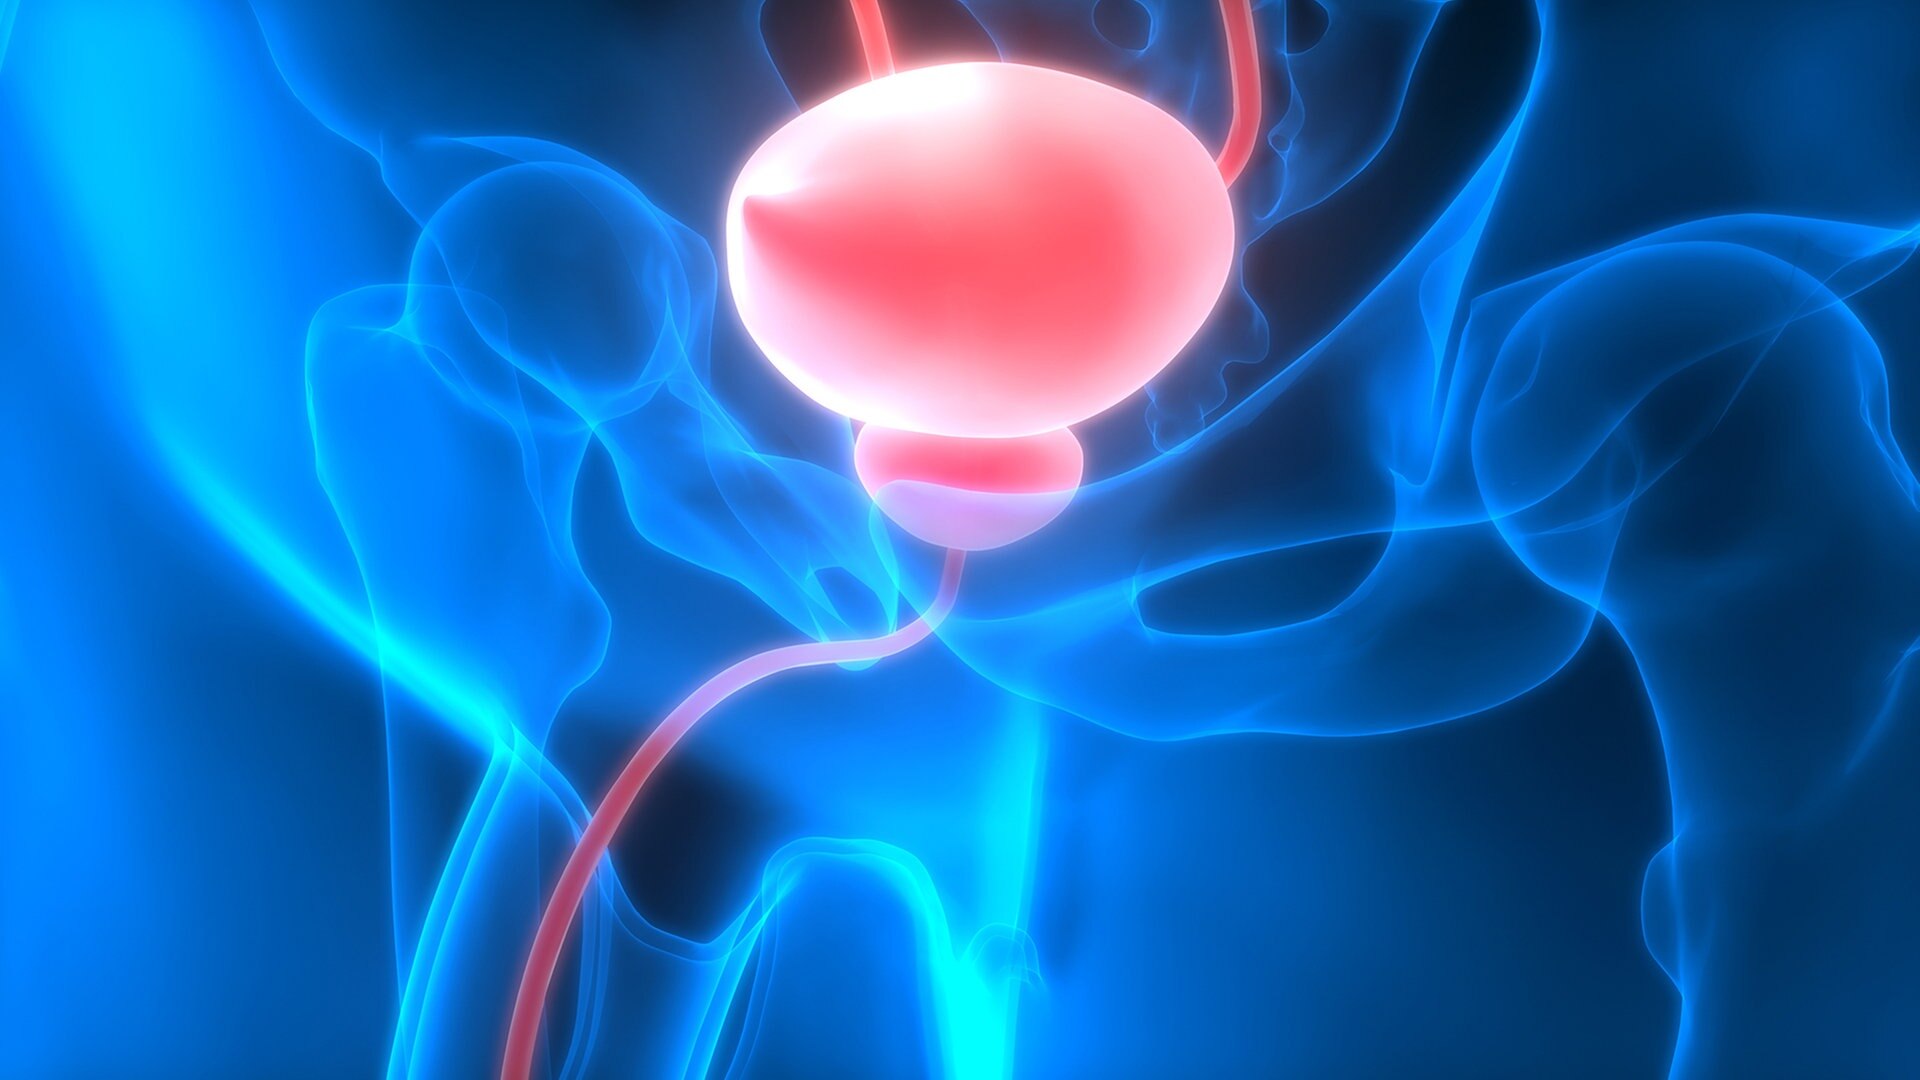 prostata medikamente nebenwirkungen jet urinar slab